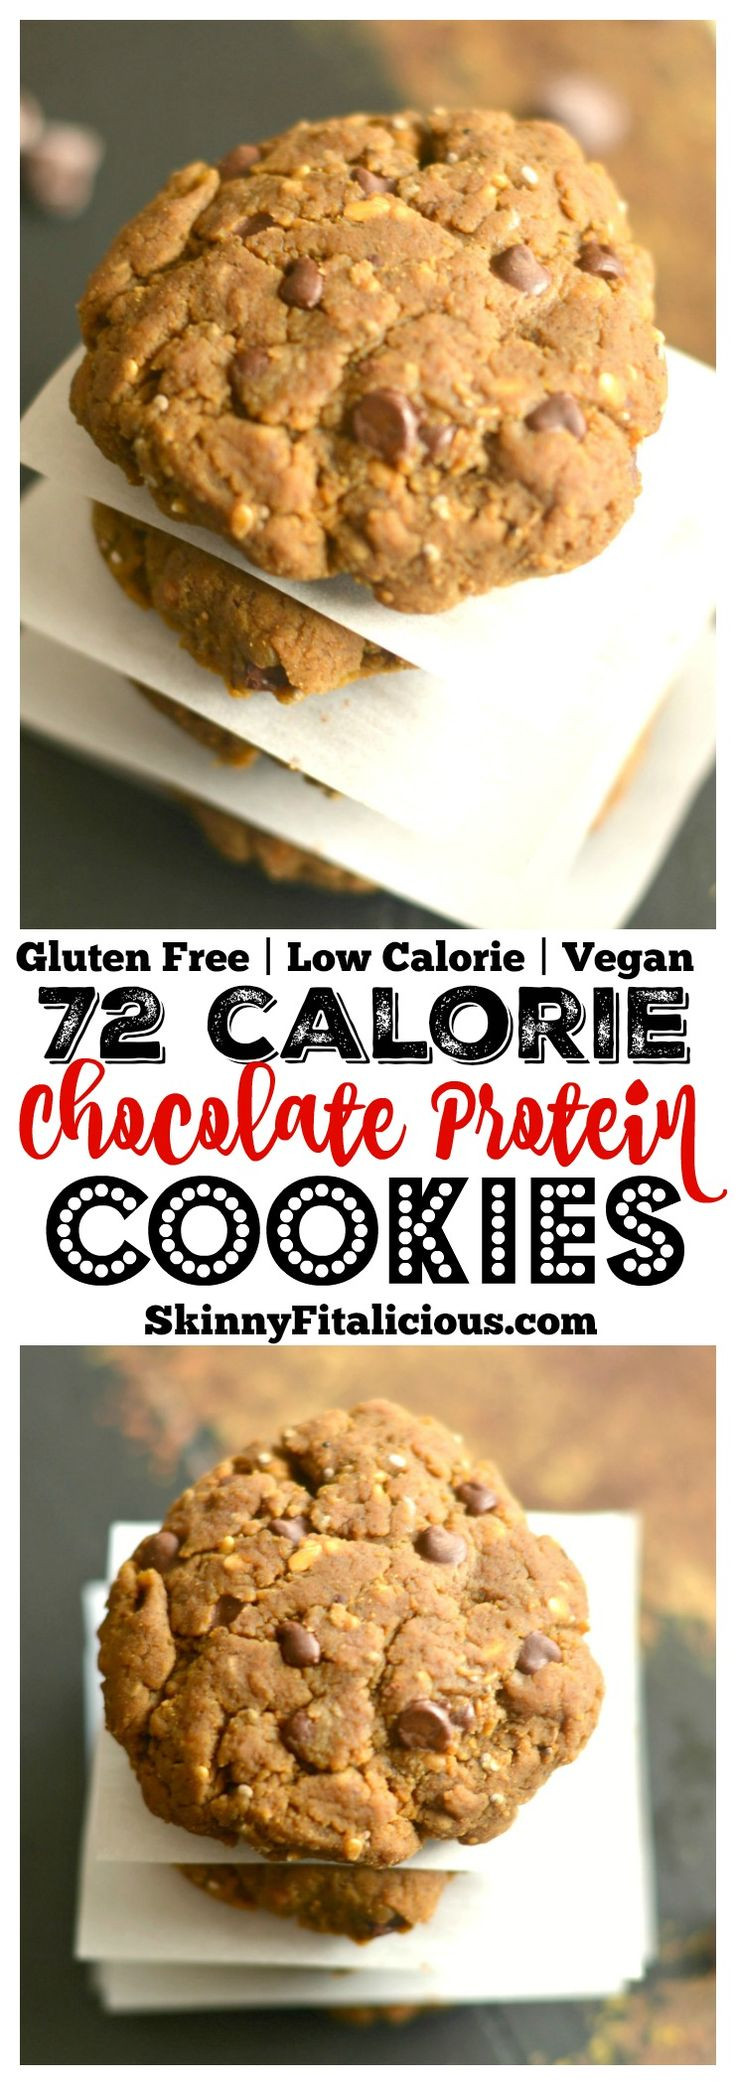 Low Calorie Paleo Recipes
 Best Low calorie paleo ideas on Pinterest